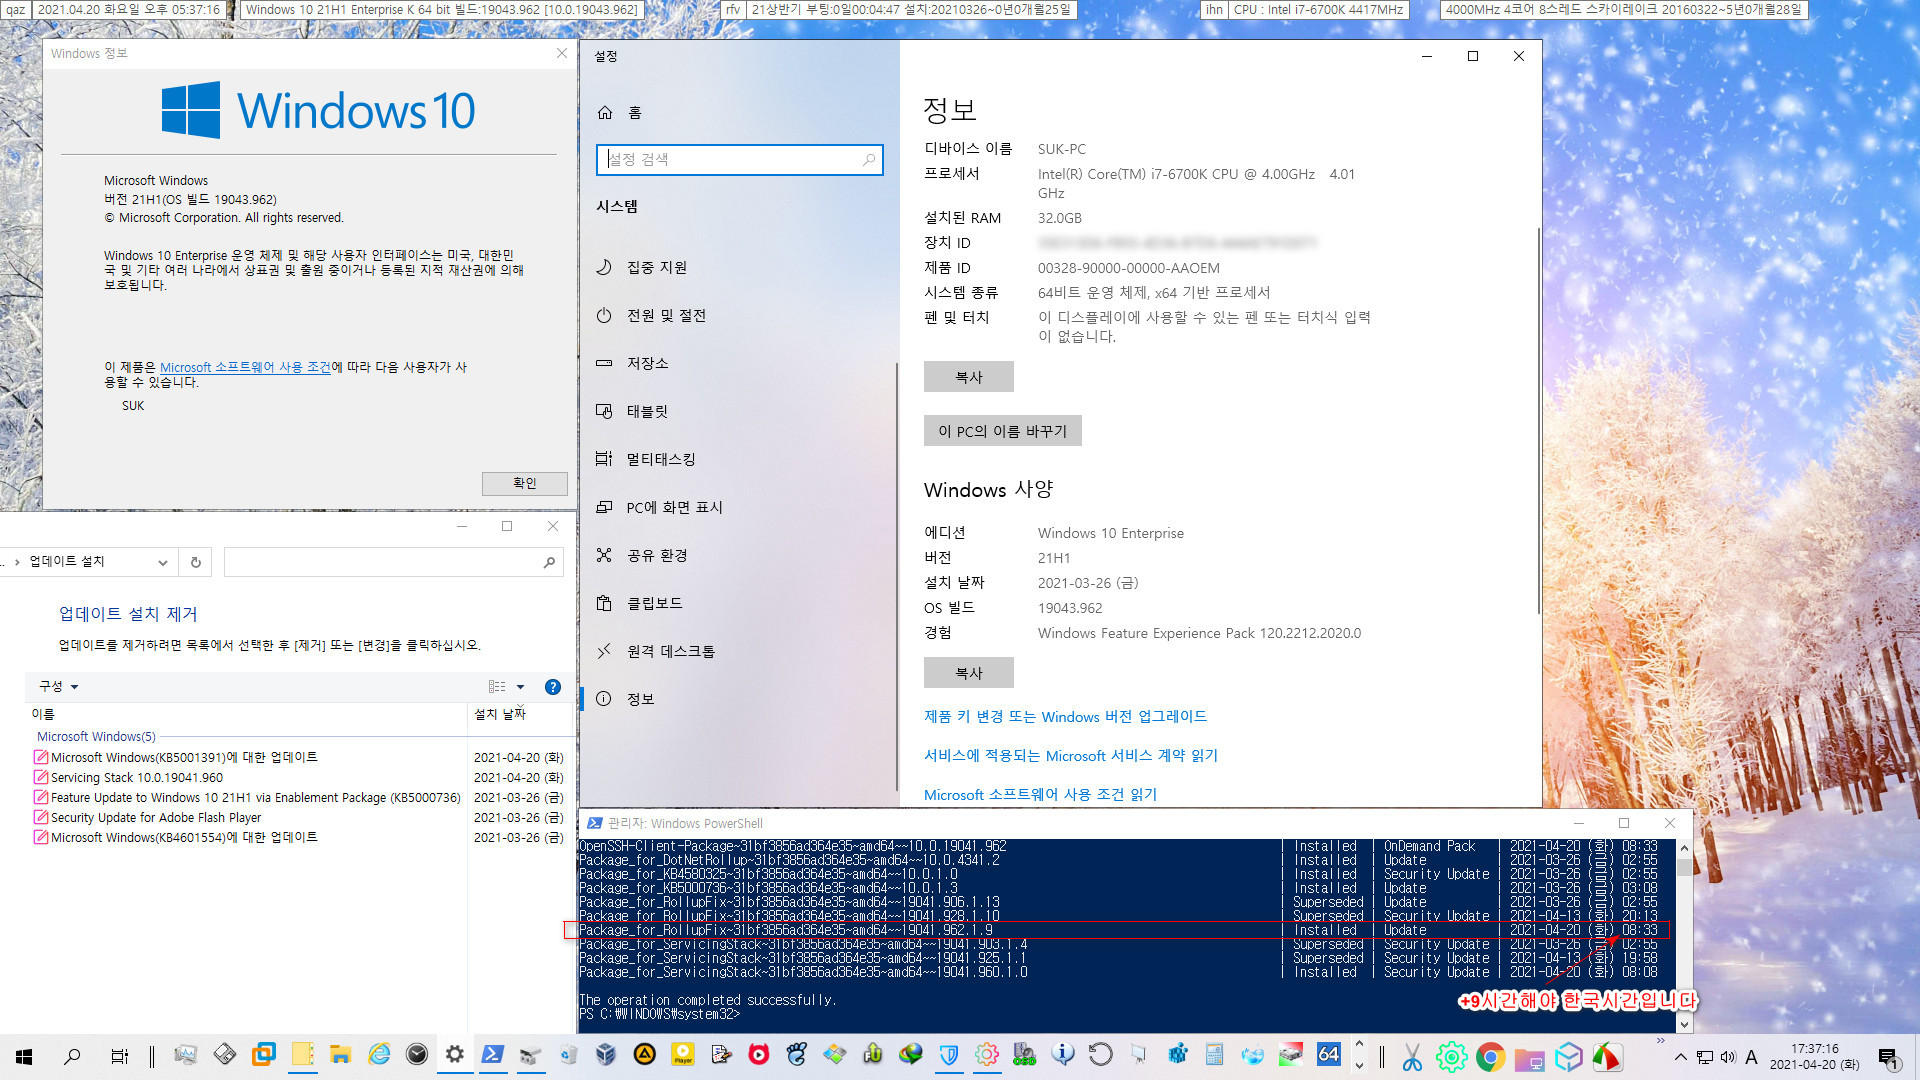 2021-04-20 화요일 베타 업데이트 - Windows 10 버전 21H1 (OS 빌드 19043.962) - 공용 누적 업데이트 KB5001391 - 실컴에 설치 - 재부팅 후 2021-04-20_173716.jpg